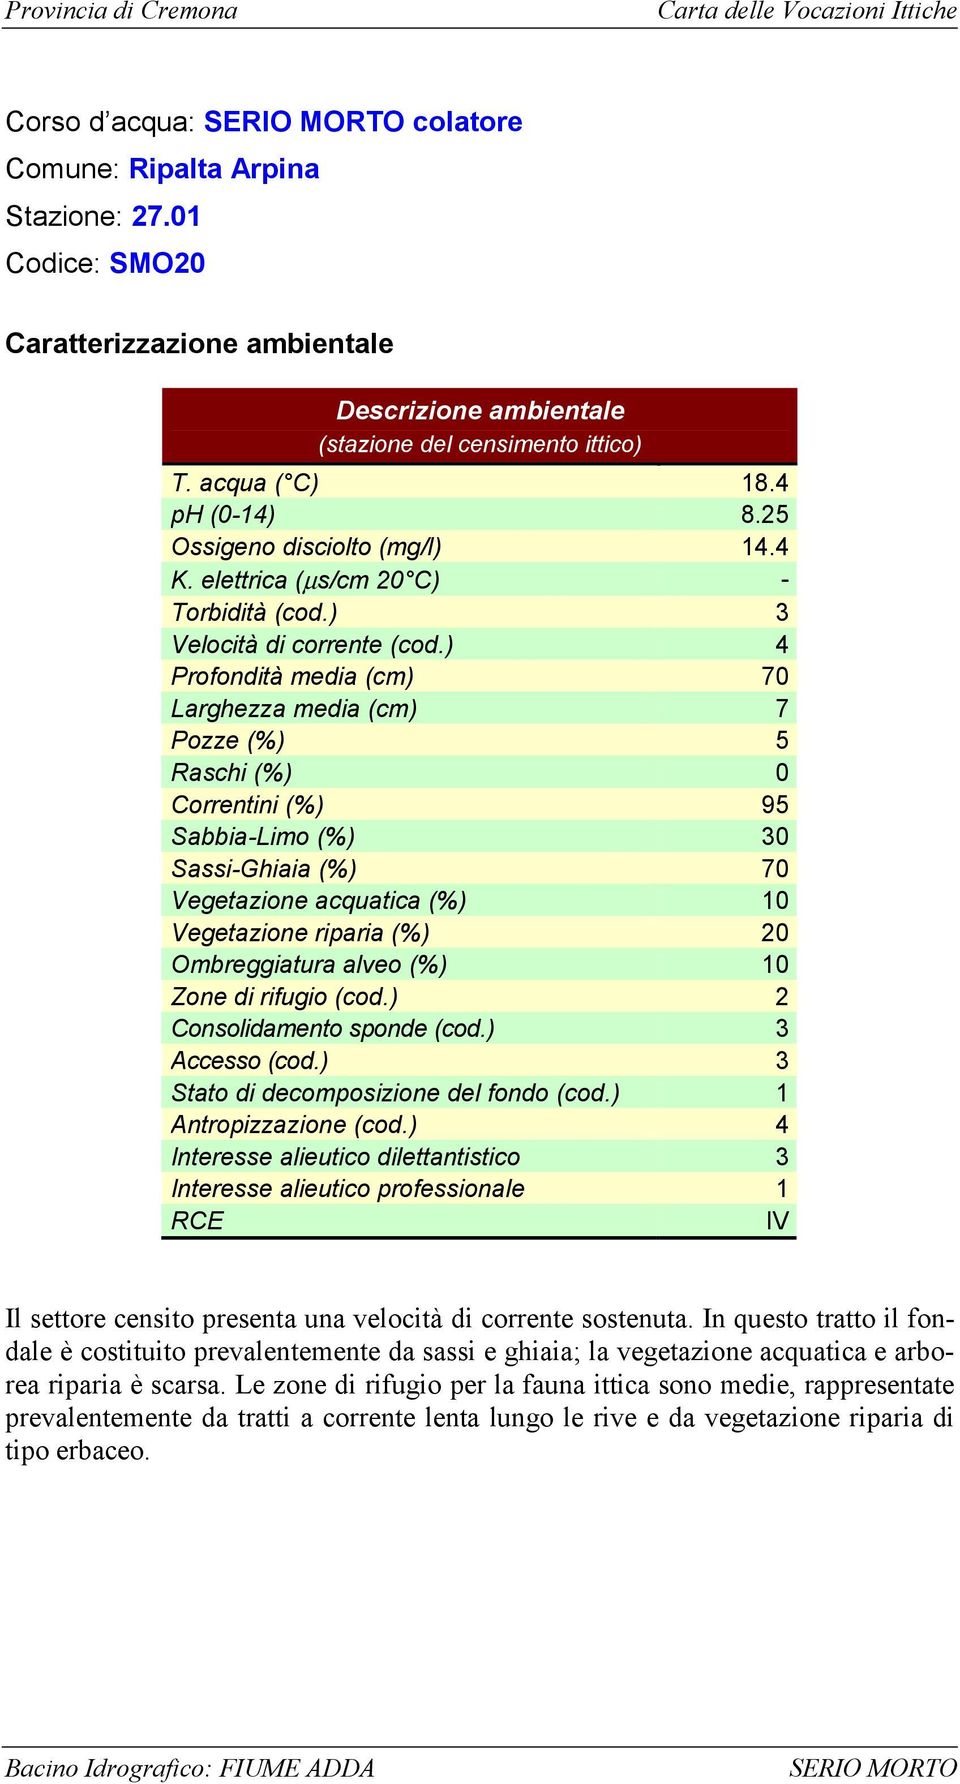 ) Profondità media (cm) 7 Larghezza media (cm) 7 Pozze (%) 5 Raschi (%) Correntini (%) 95 Sabbia-Limo (%) 3 Sassi-Ghiaia (%) 7 Vegetazione acquatica (%) 1 Vegetazione riparia (%) Ombreggiatura alveo